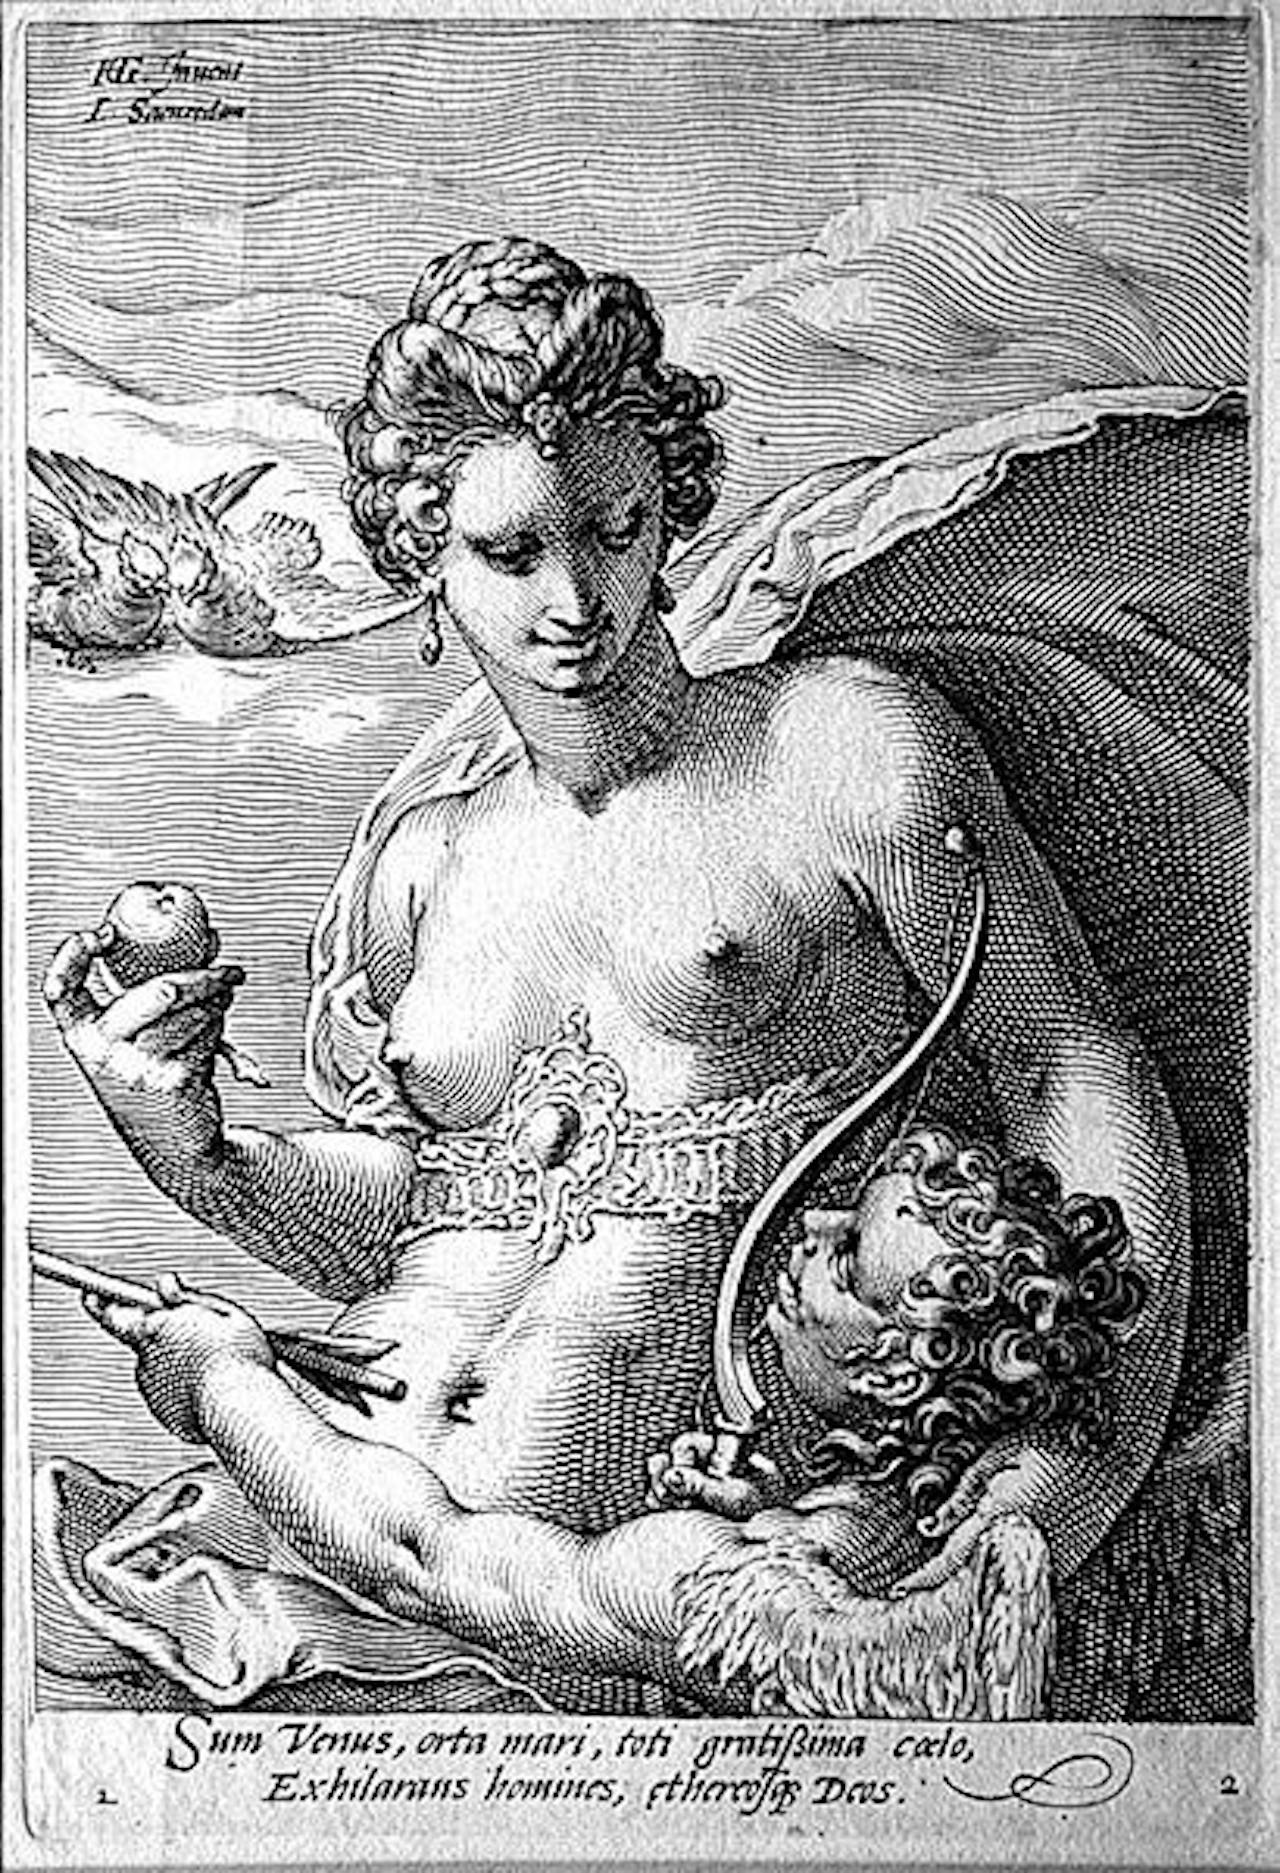 Zwart-wit illustratie van Jan Saenredam waar Venus en Cupido op zijn afgebeeld.